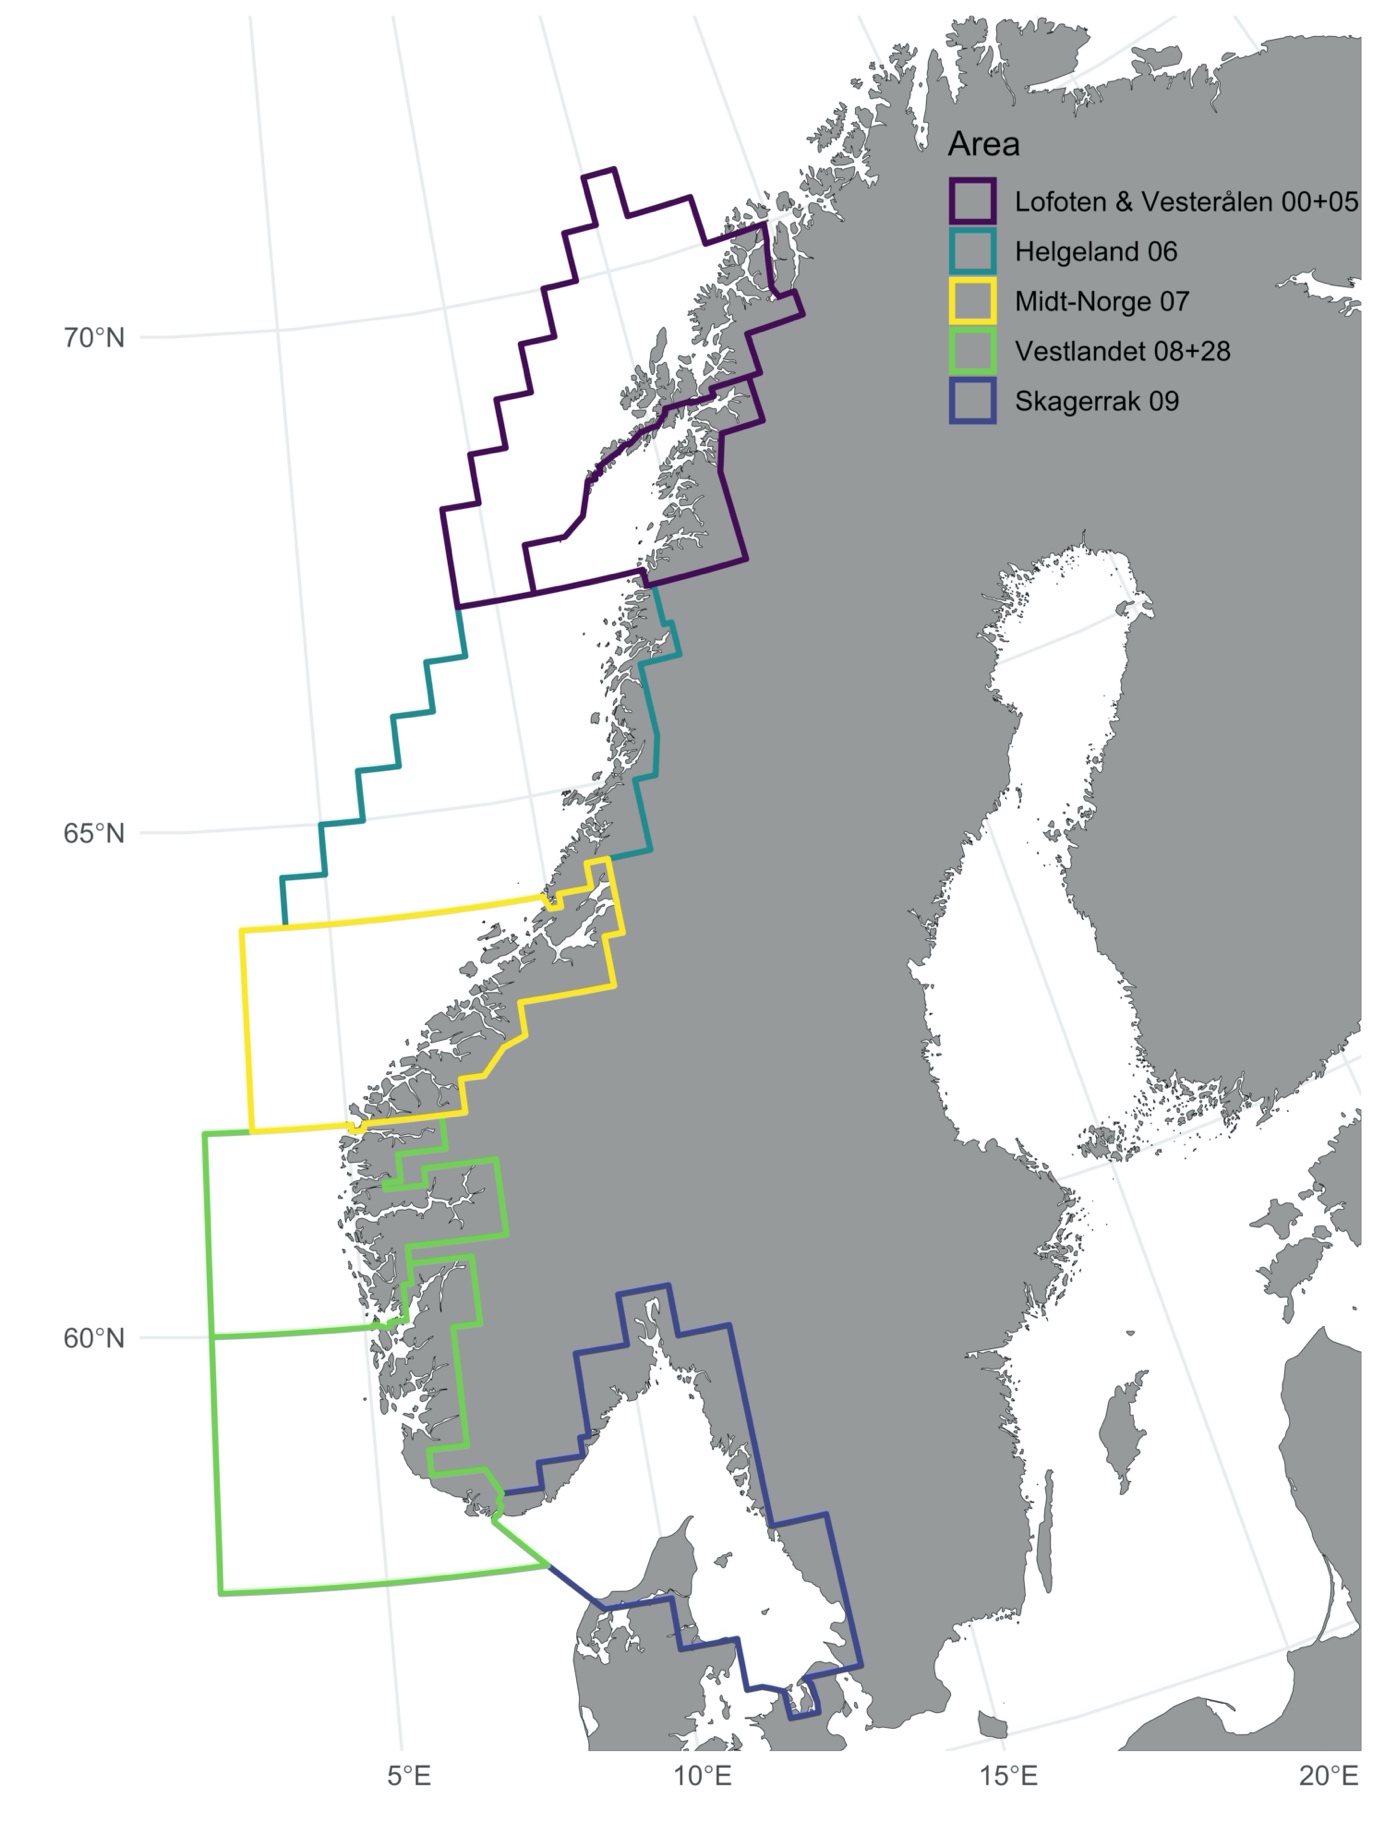 Inndeling av den norske taskekrabbebestanden i fem forvaltningsområder (fra sør til nord): Skagerrak, Vestlandet, Midt-Norge, Helgeland og Lofoten & Vesterålen. Områdene er basert på de samme statistiske fiskeriområdene som fiskerne rapporterer på sluttsedlene til Fiskeridirektoratet.